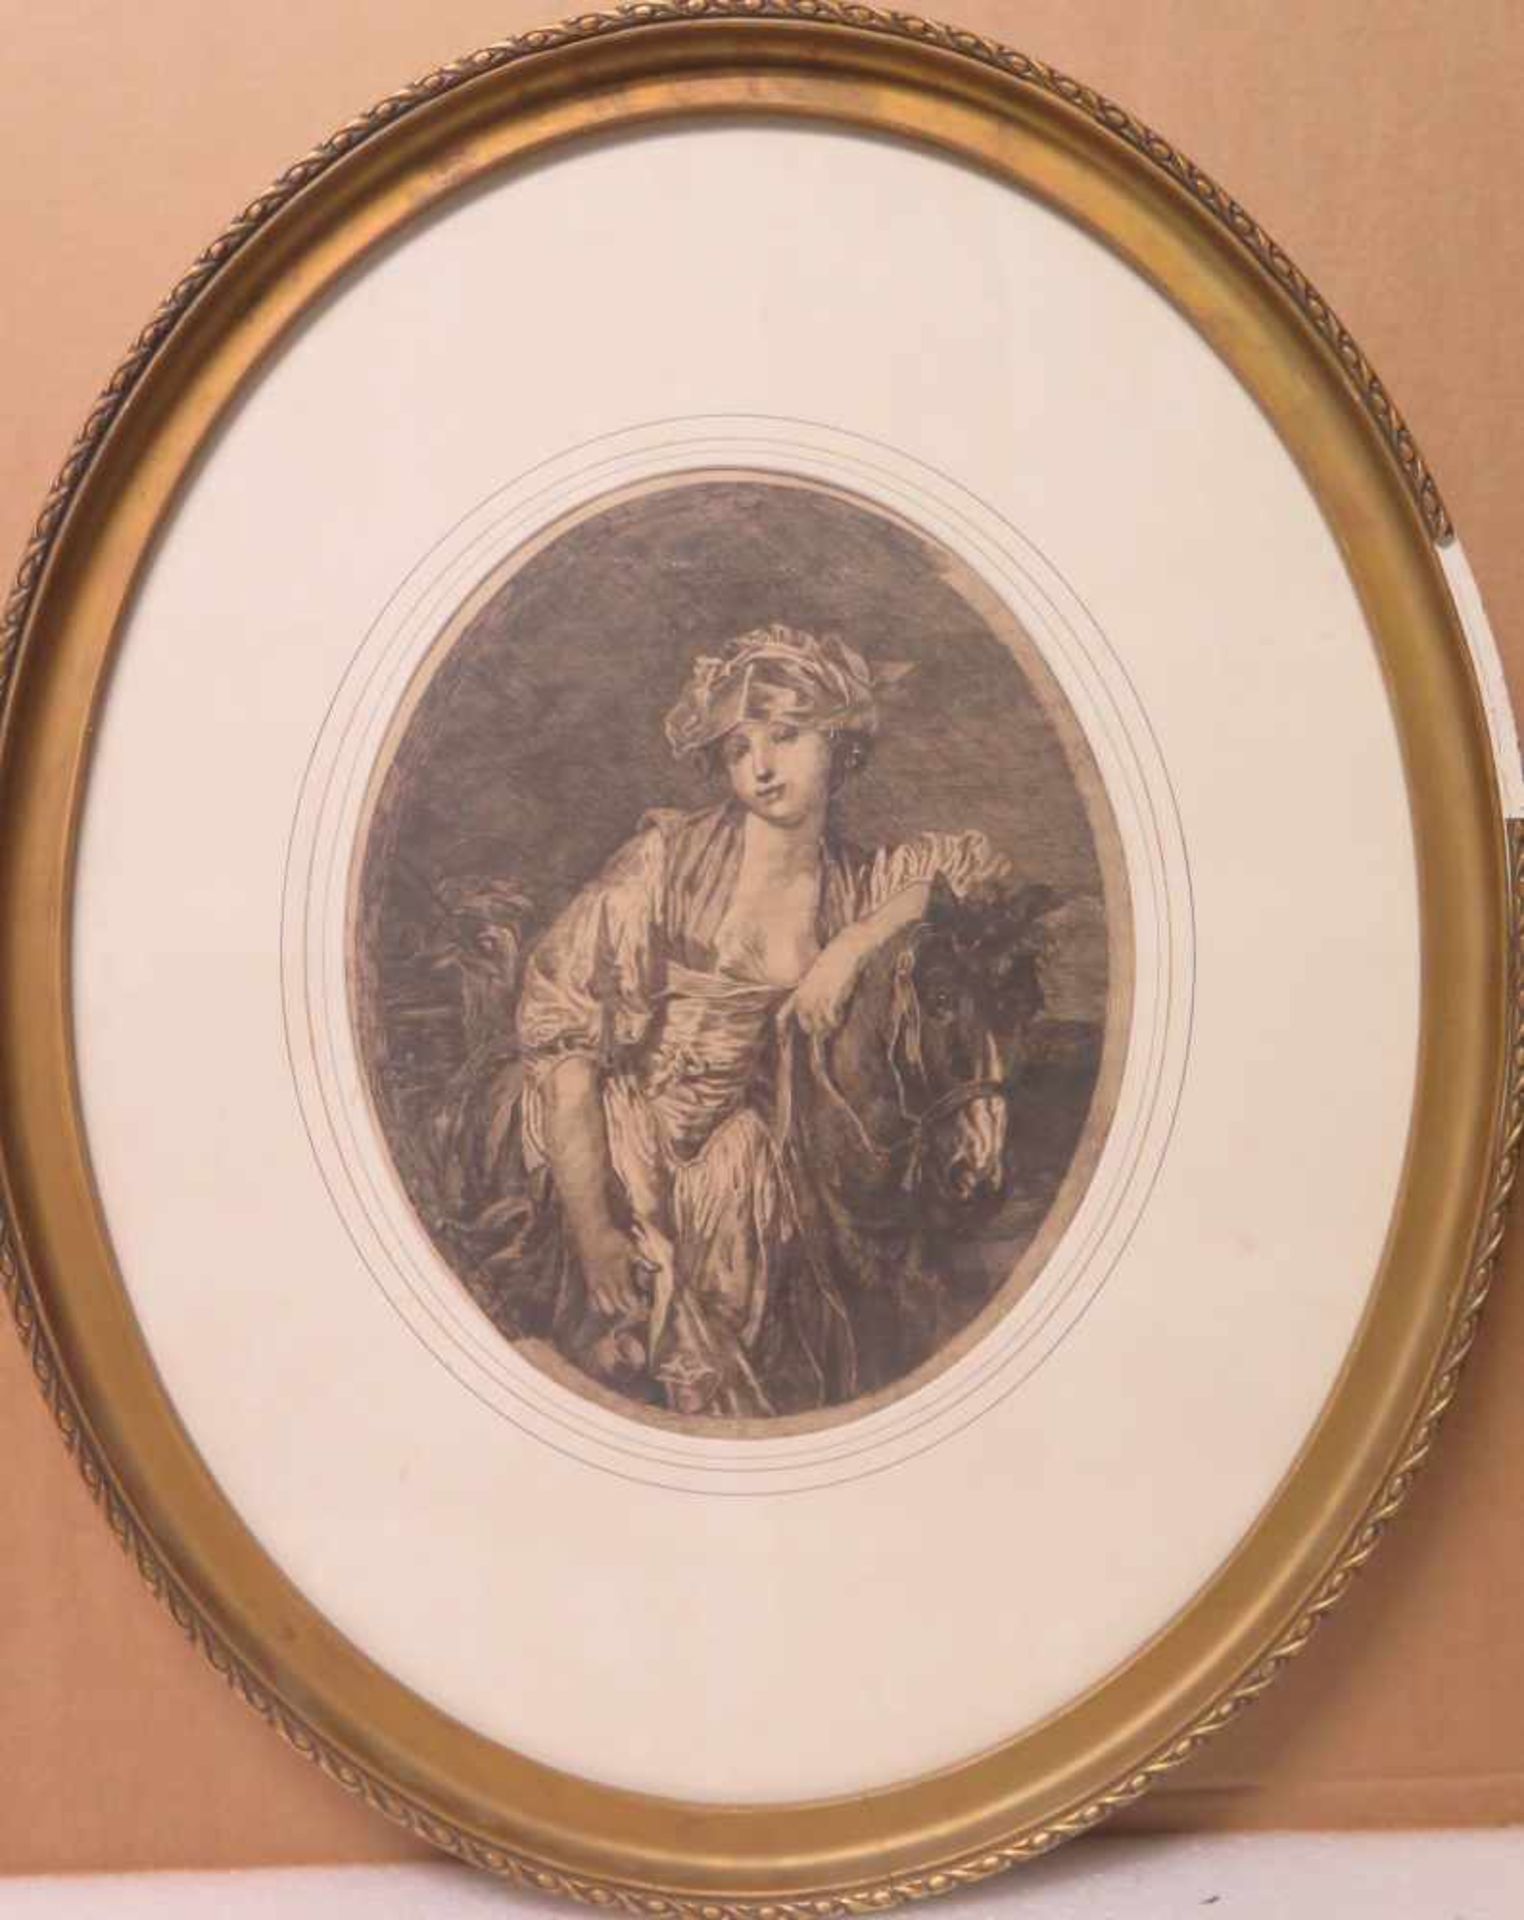 COMPTE-CALIX François-Claudius (attribué à), 1813-1880 [FR].Portrait d'élégante, pointe sèche (33